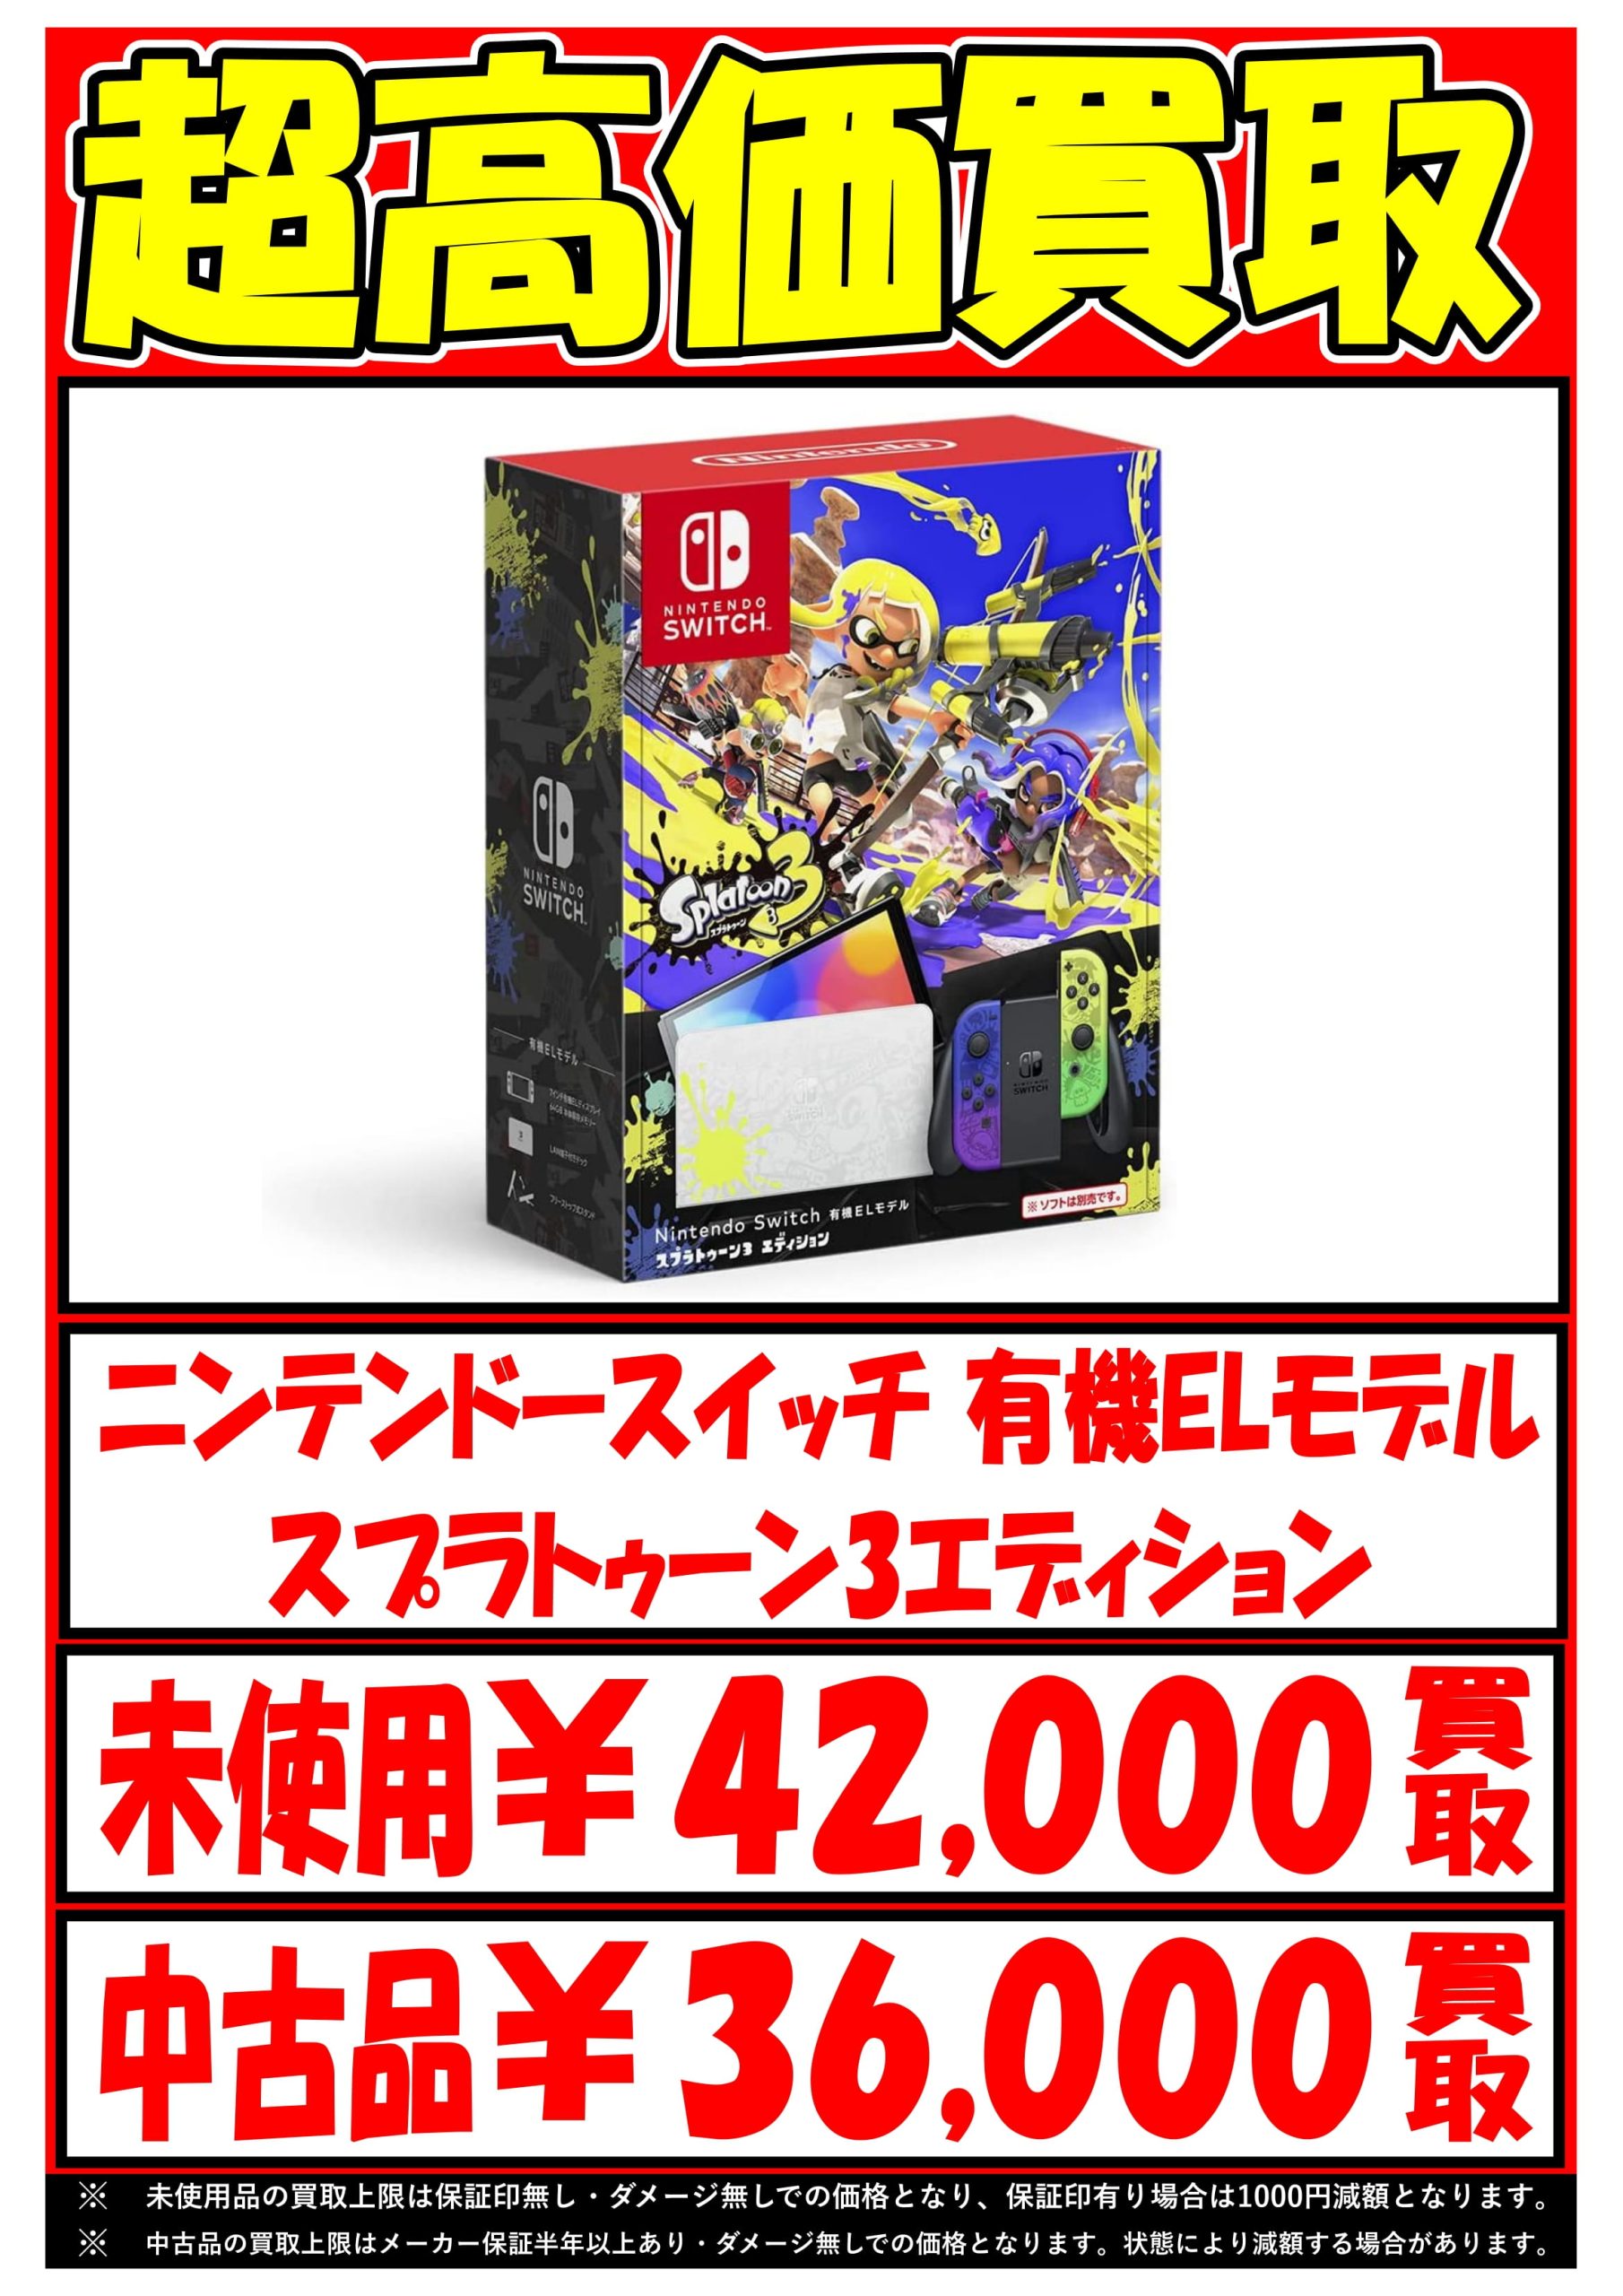 日本最大のブランド Nintendo Switch スプラトゥーン3 エディション